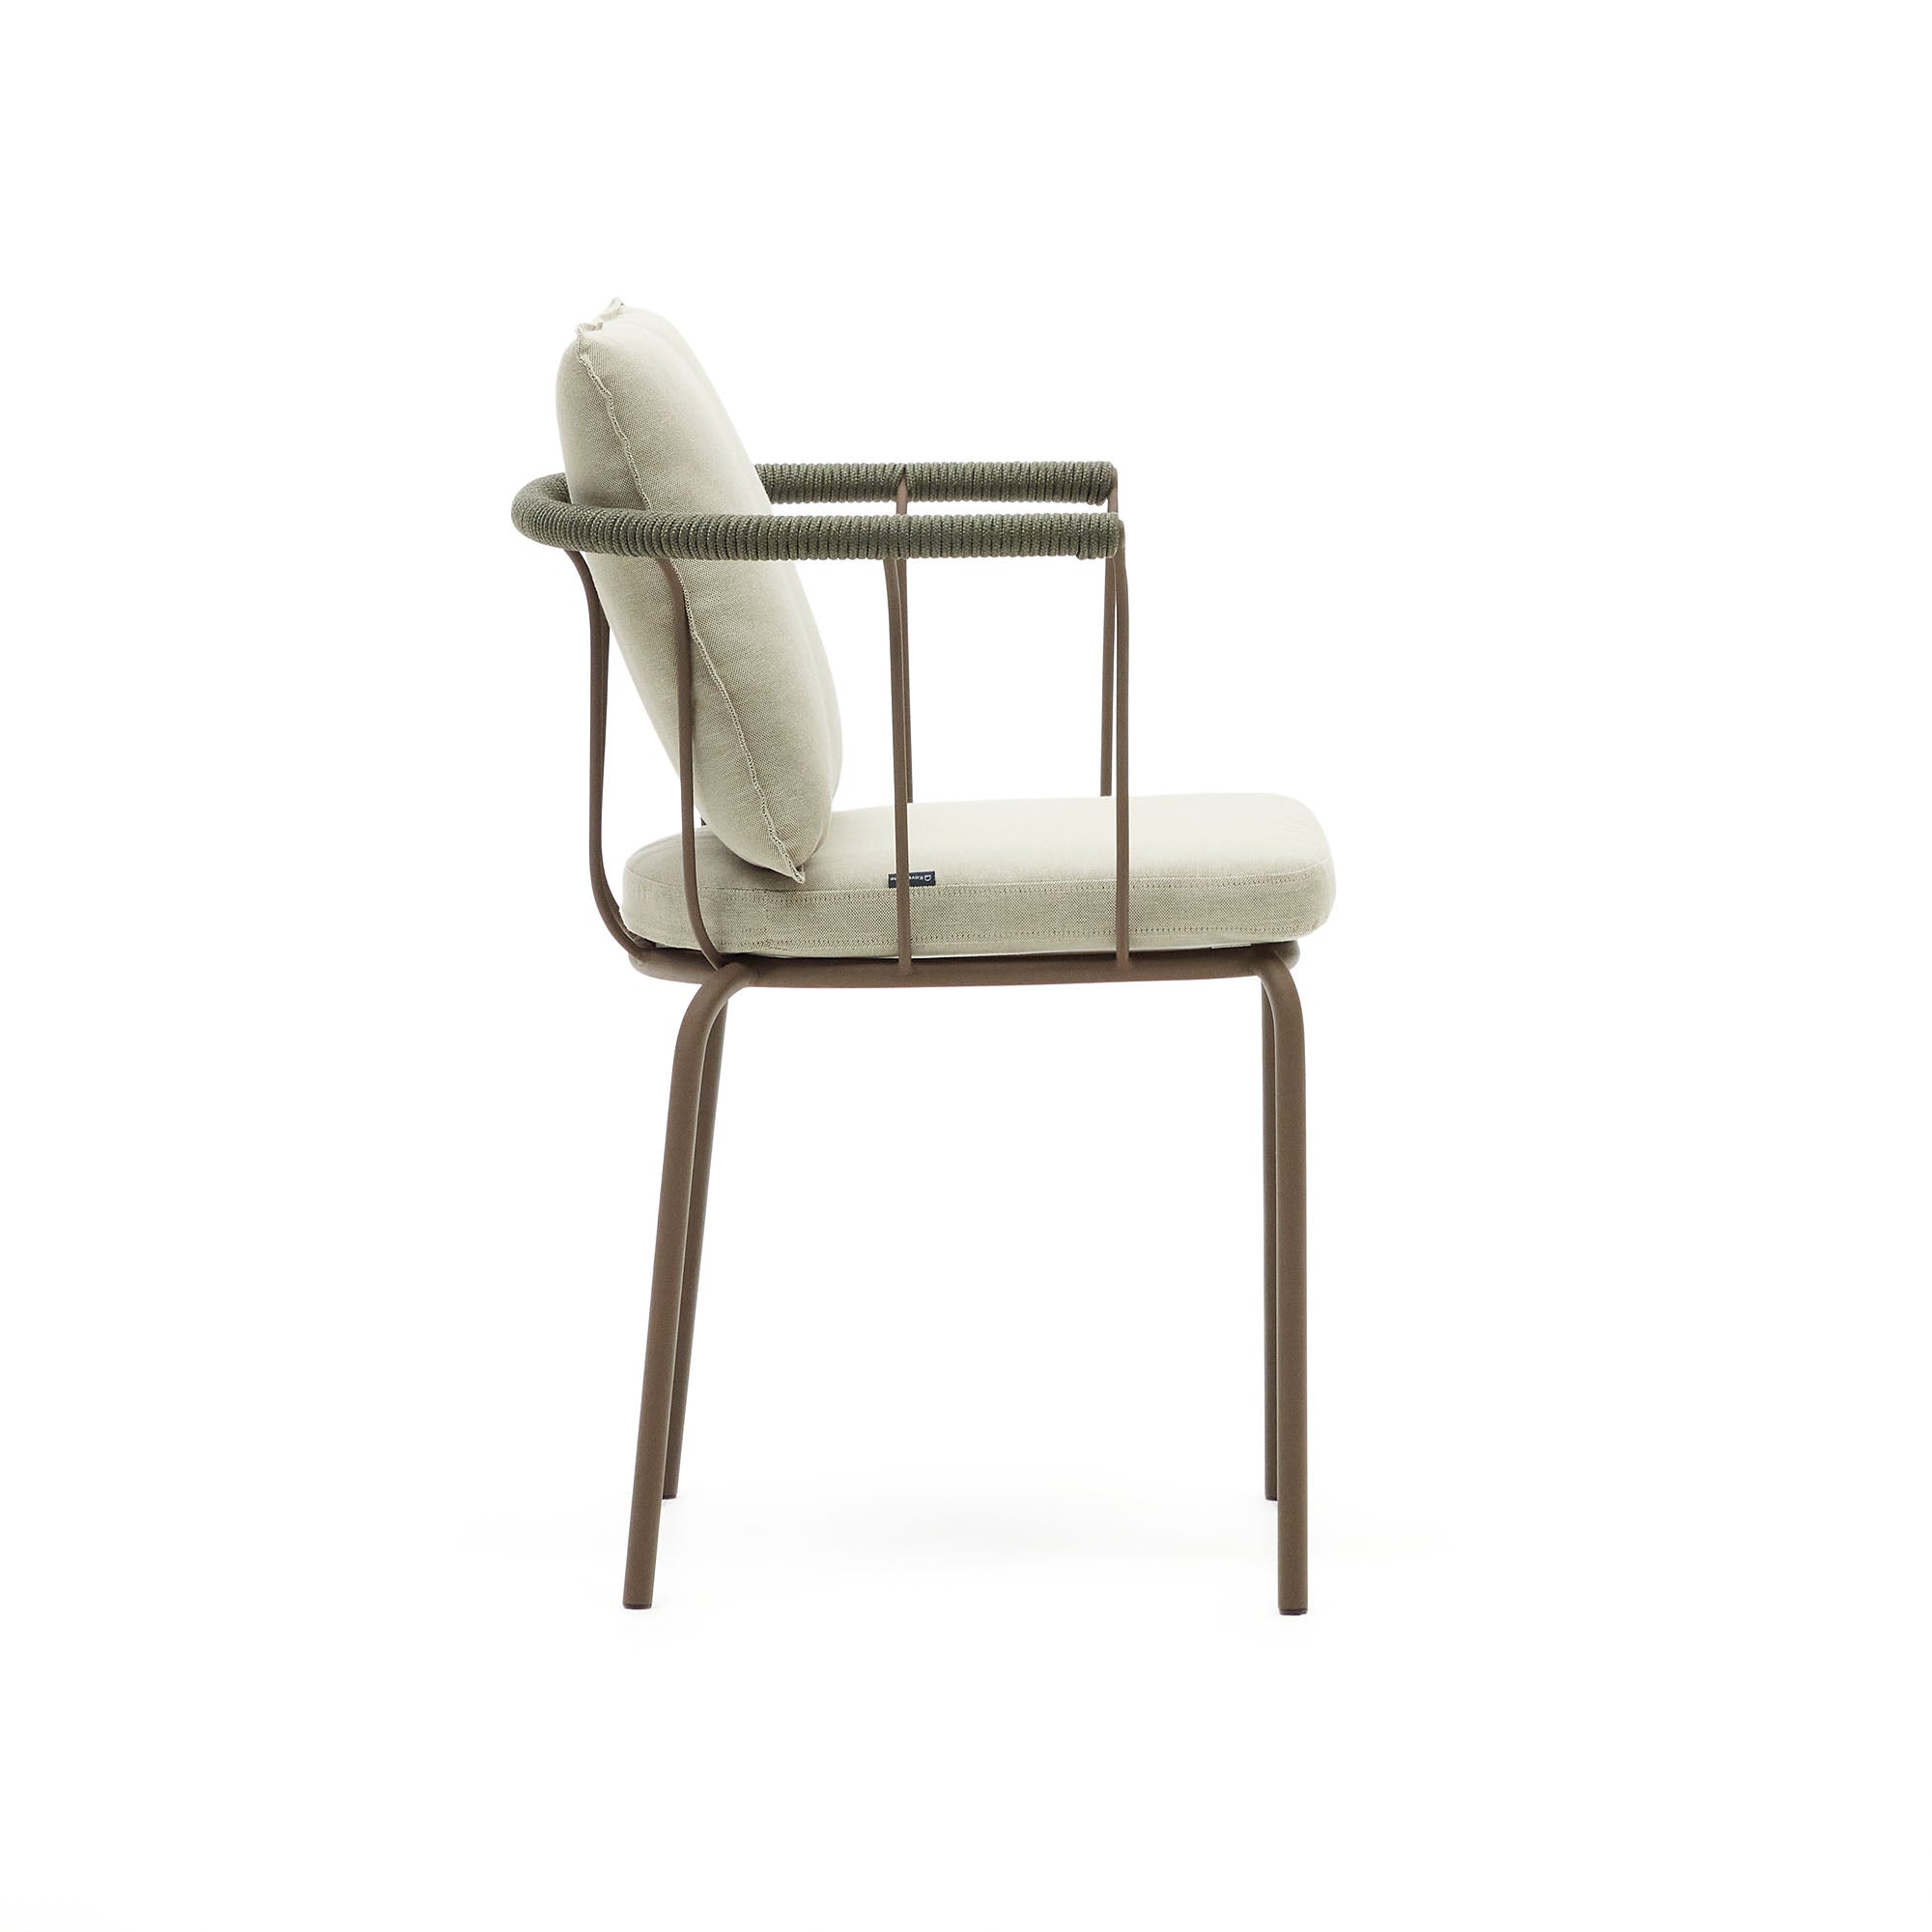 Salguer egymásra rakható szék zsinórból és acélból, barna festett kivitelben